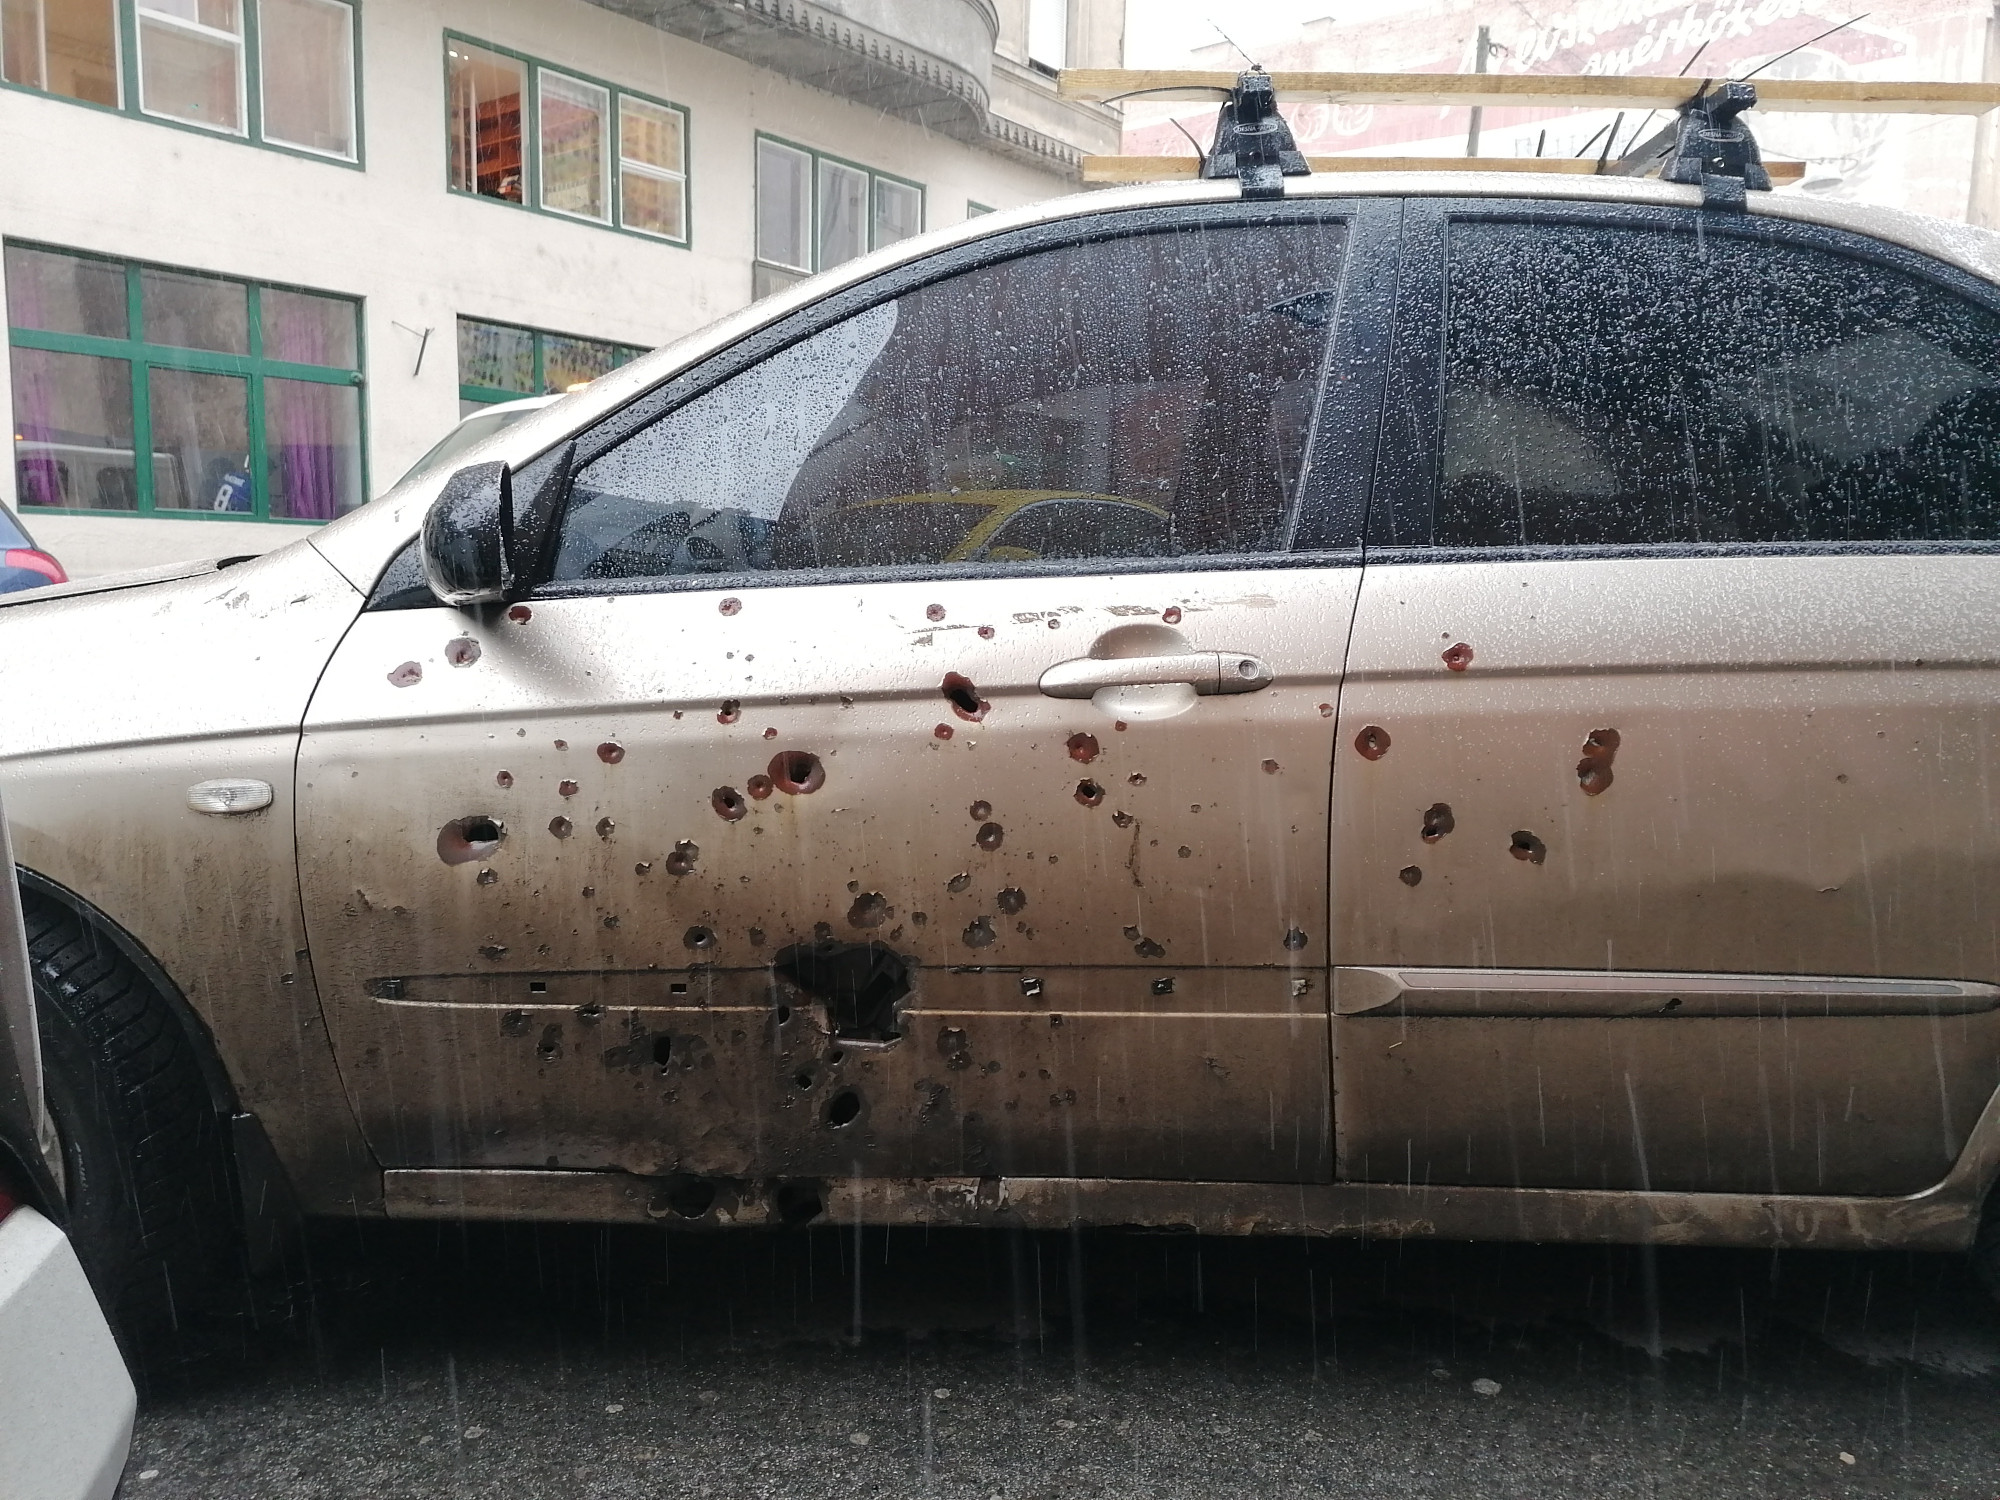 Mariupoli kocsi parkol a Rumbach Sebestyén utcában, láthatóan szétlőtték az oldalát